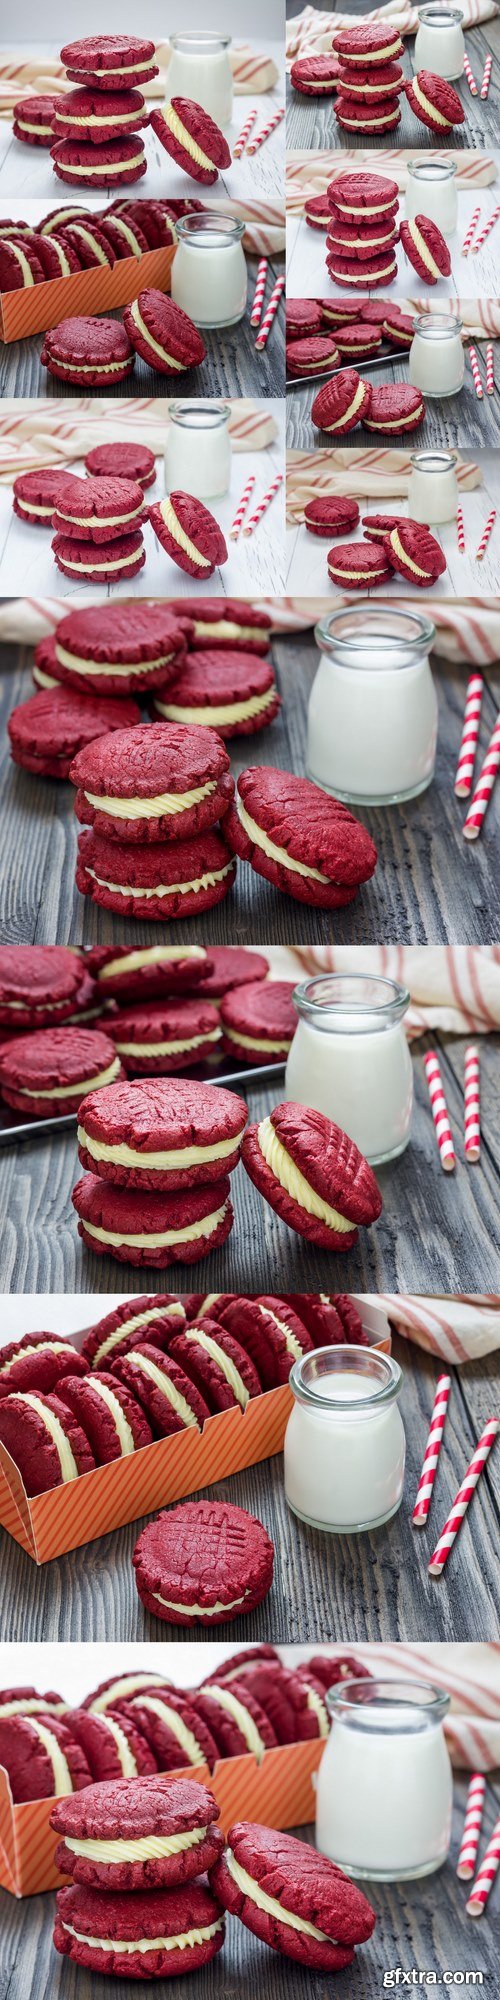 Red velvet sandwich cookies with milk